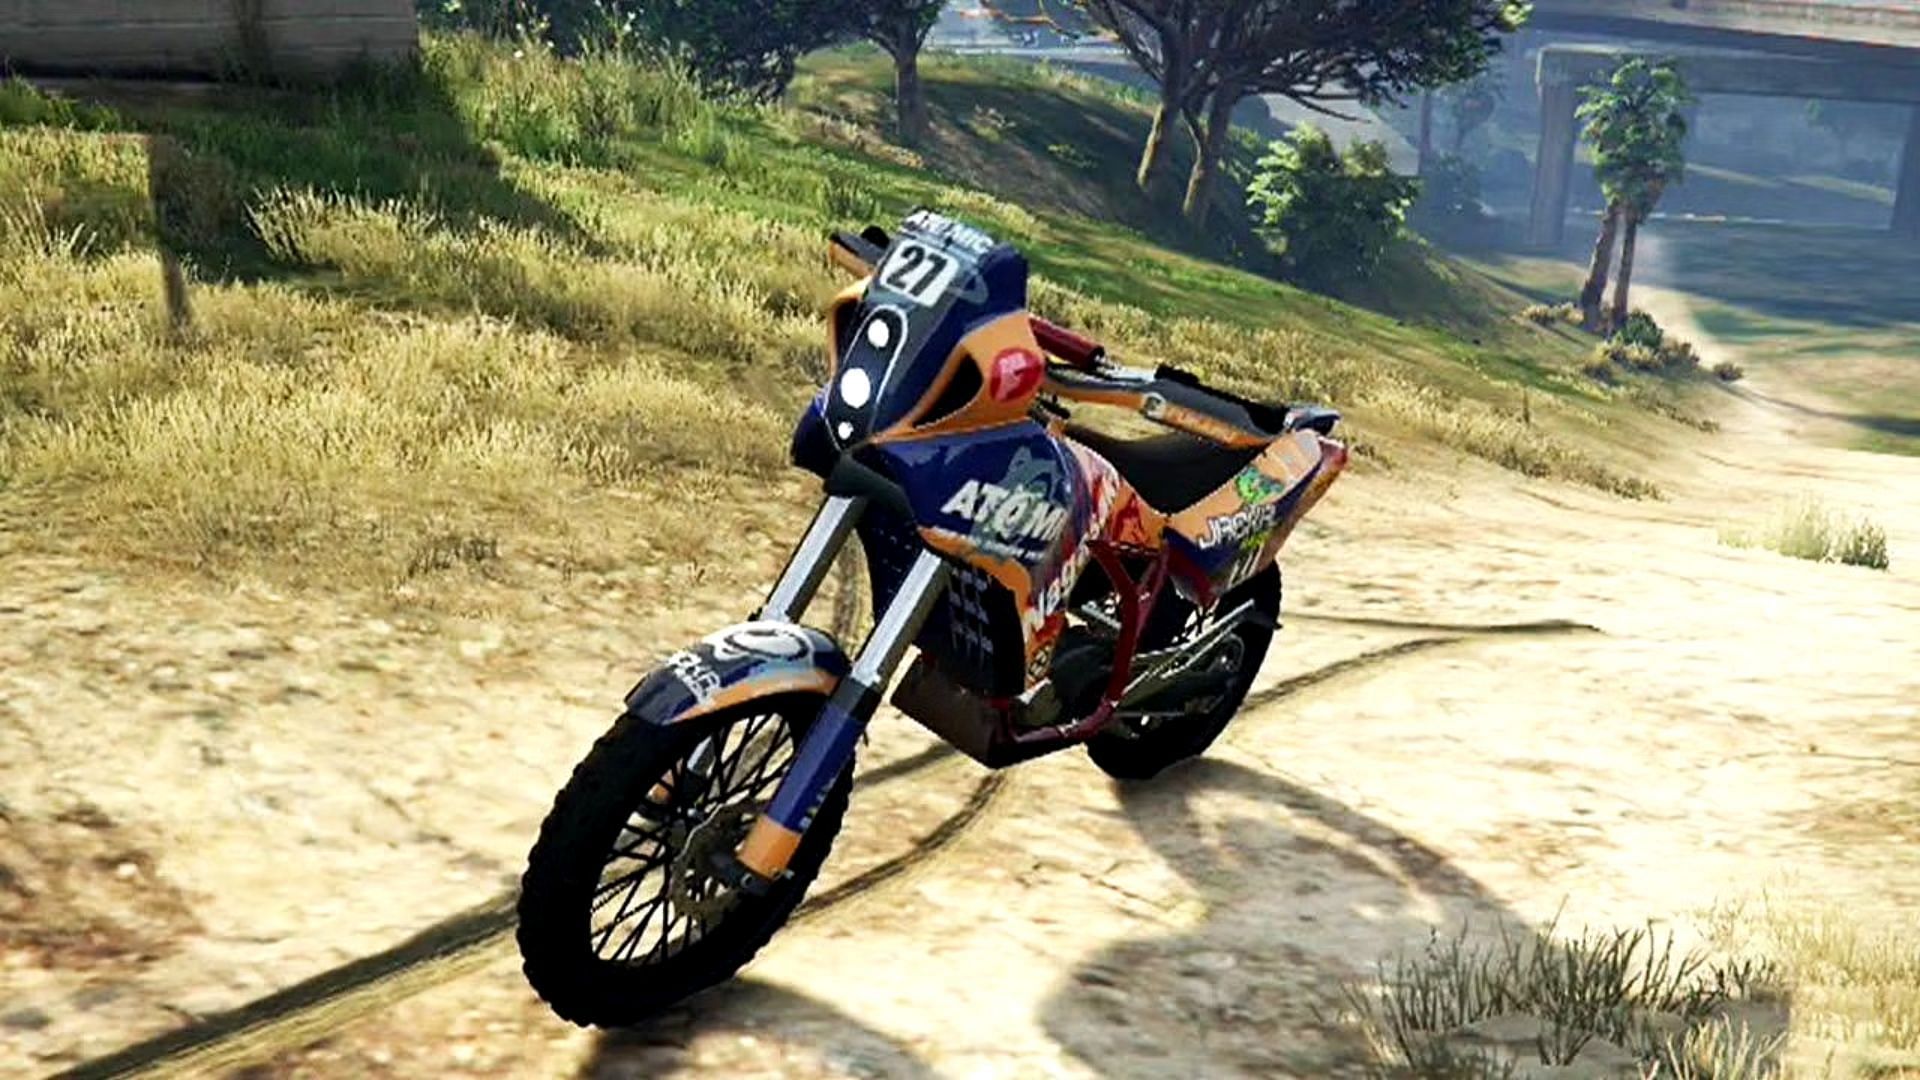 BF400 motorcycle is available at 75% discount in GTA Online this week (Image via Sportskeeda)